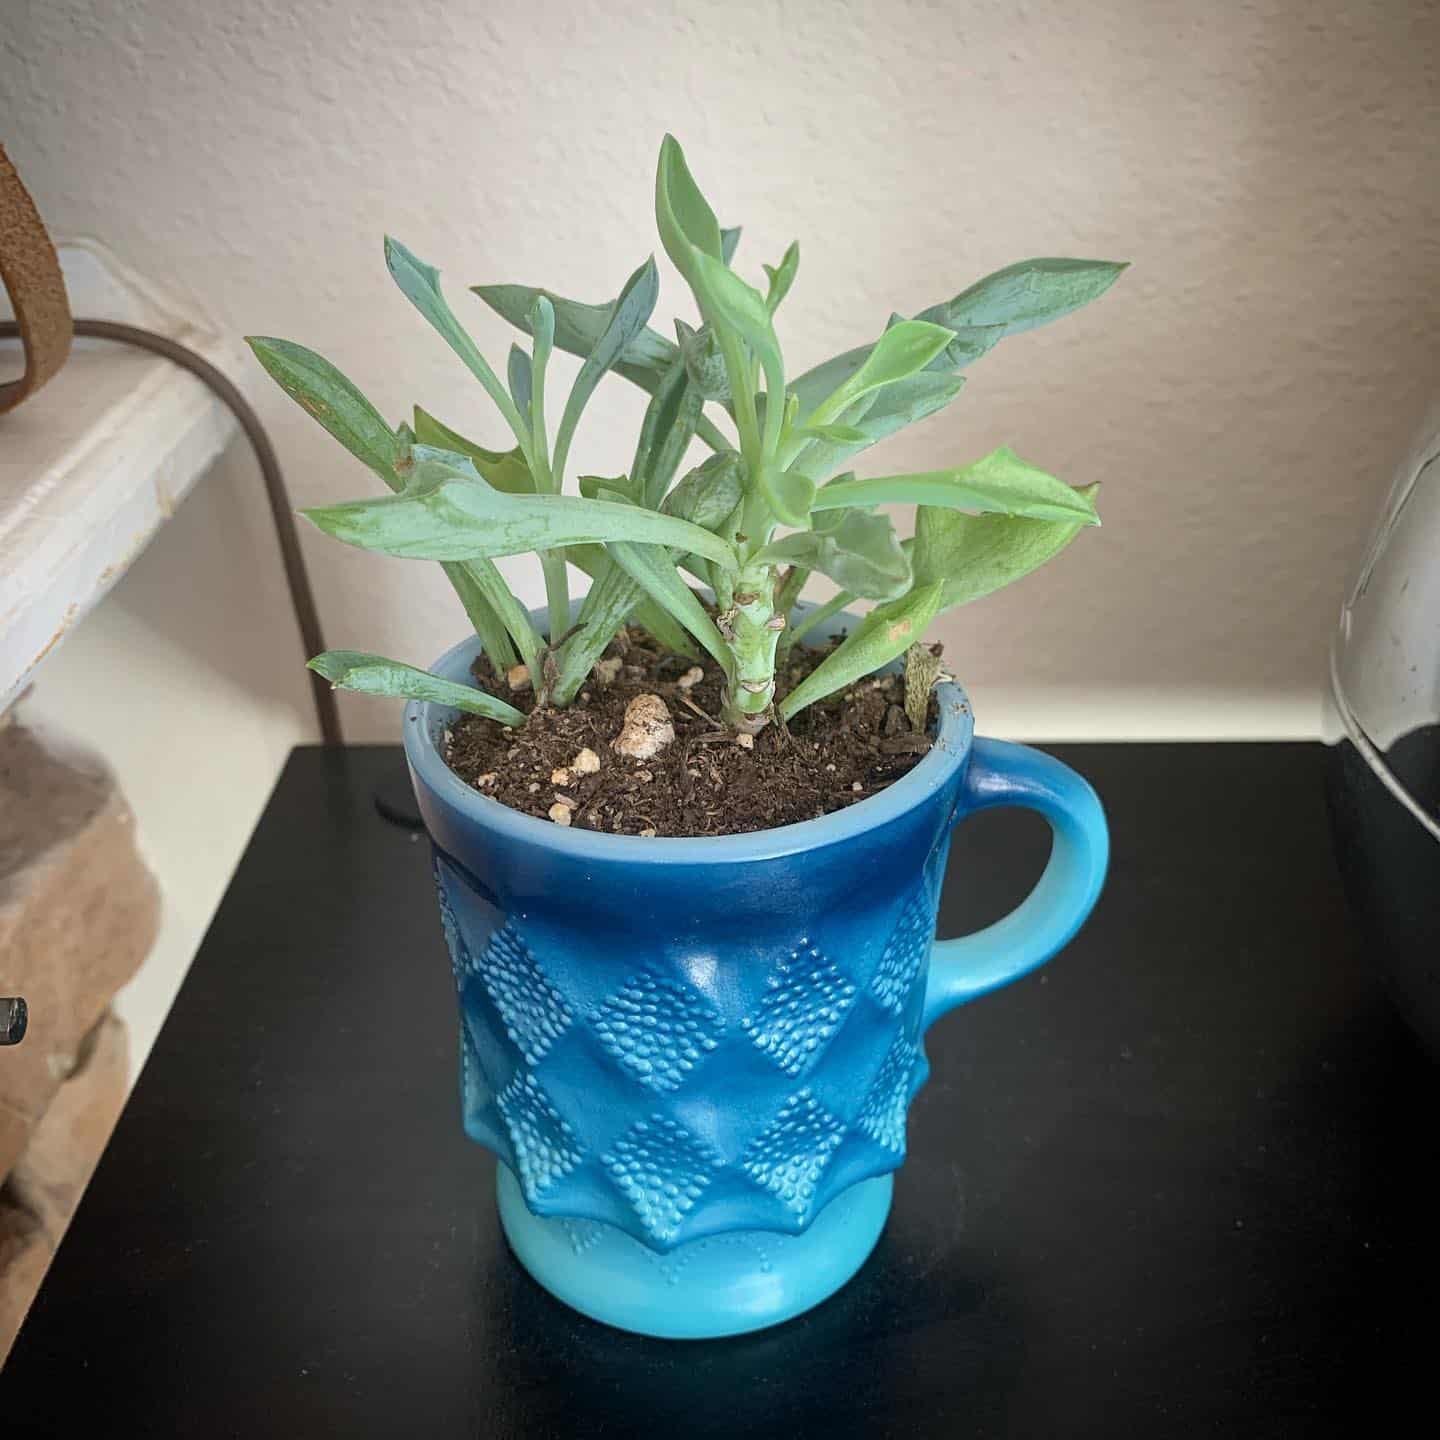 SENECIO KLEINIIFORMIS plant in a blue cup